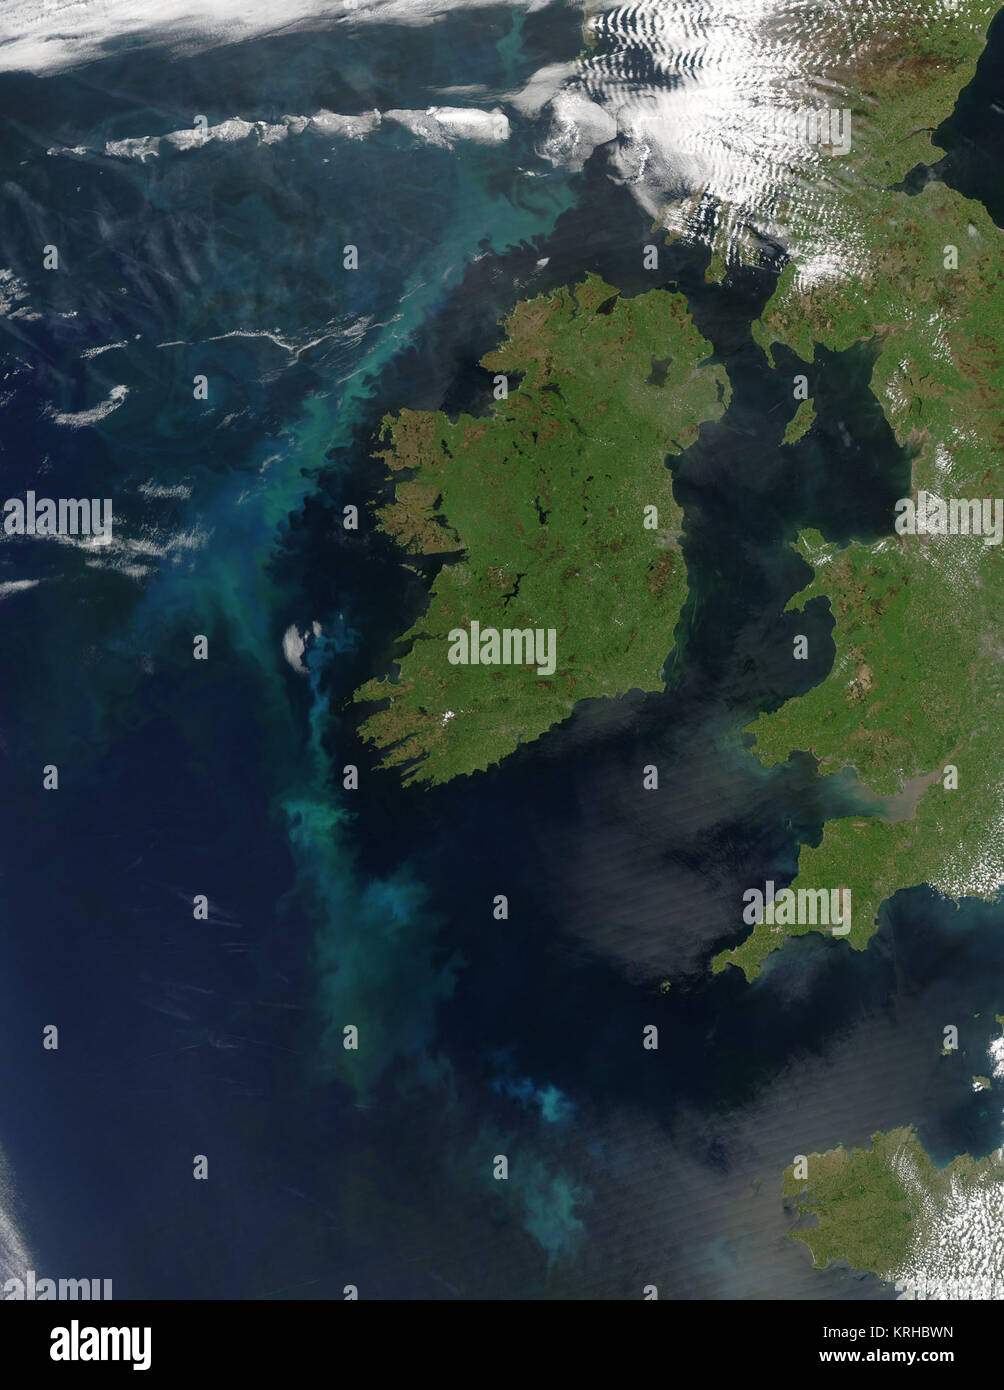 Wirbelnde Wolken von Blau und Grün im Atlantischen Ozean westlich von Irland am 2. Juni 2006 leuchtet, wenn der Moderate Resolution Imaging Spectroradiometer (MODIS) modis.gsfc.nasa.gov auf der NASA-aqua.nasa.gov/ Aqua Satelliten dieses Bild aufgenommen. Der Ozean ist normalerweise schwarz in True-color, Foto - wie Sat-Bilder wie diese hier, aber ein großer Phytoplankton bloom das Wasser Fastenzeit seine strahlend blauen und grünen Farbtönen. Phytoplankton sind mikroskopisch kleine Pflanzen, die in der sonnendurchfluteten Oberfläche Wasser des Ozeans wachsen. Wenn genug der Pflanzen an einem Ort wachsen, die Blüte kann vom Weltraum aus gesehen werden. Neben Färbung oc Stockfoto